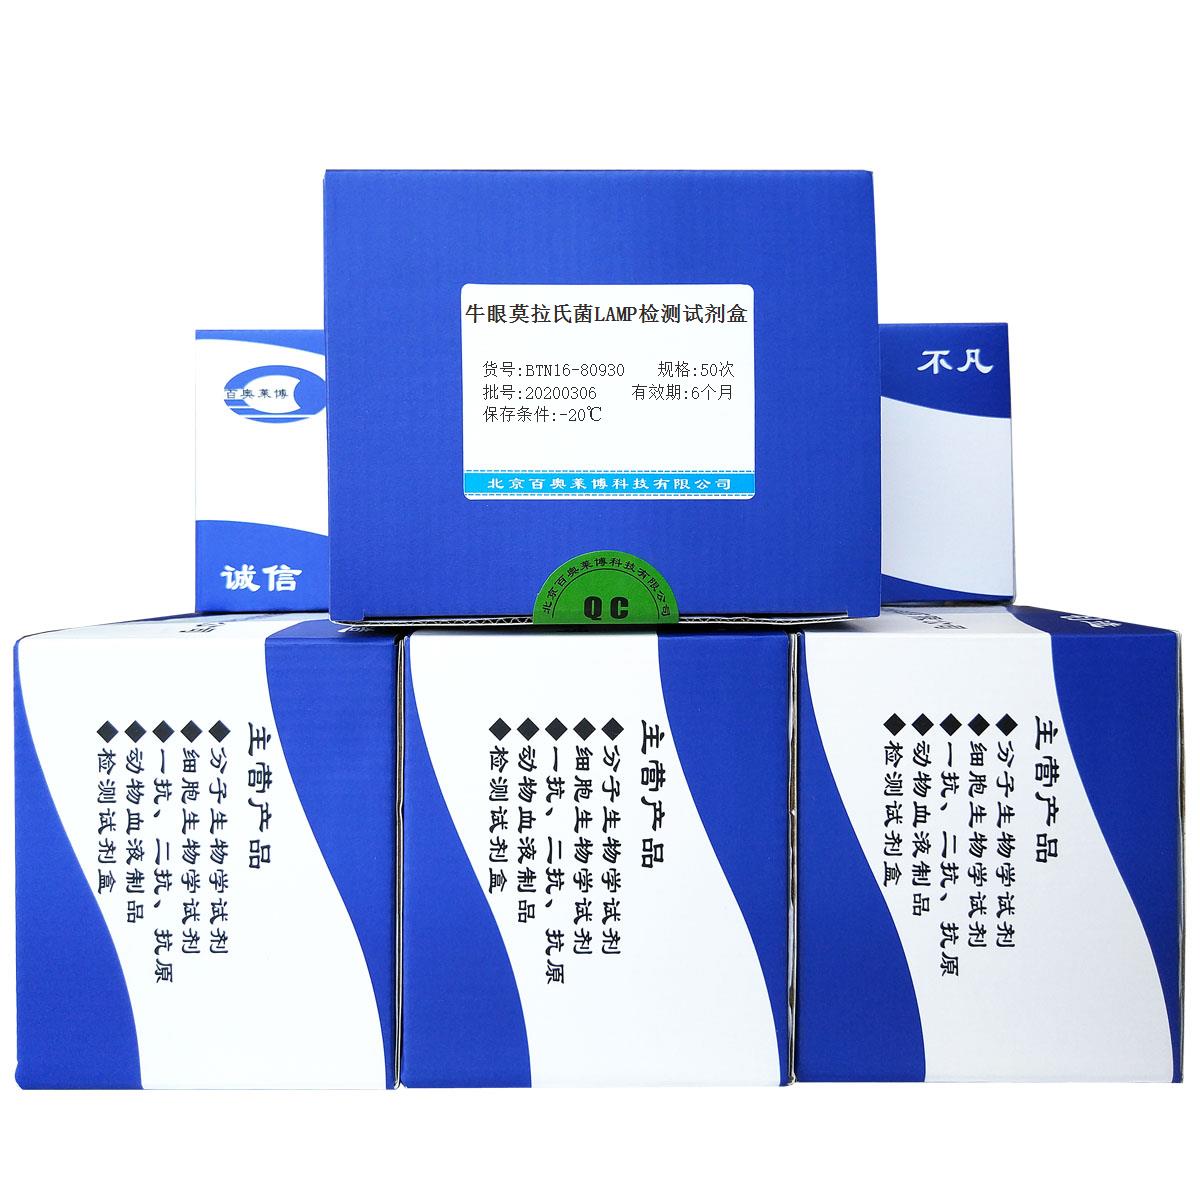 牛眼莫拉氏菌LAMP检测试剂盒北京厂家